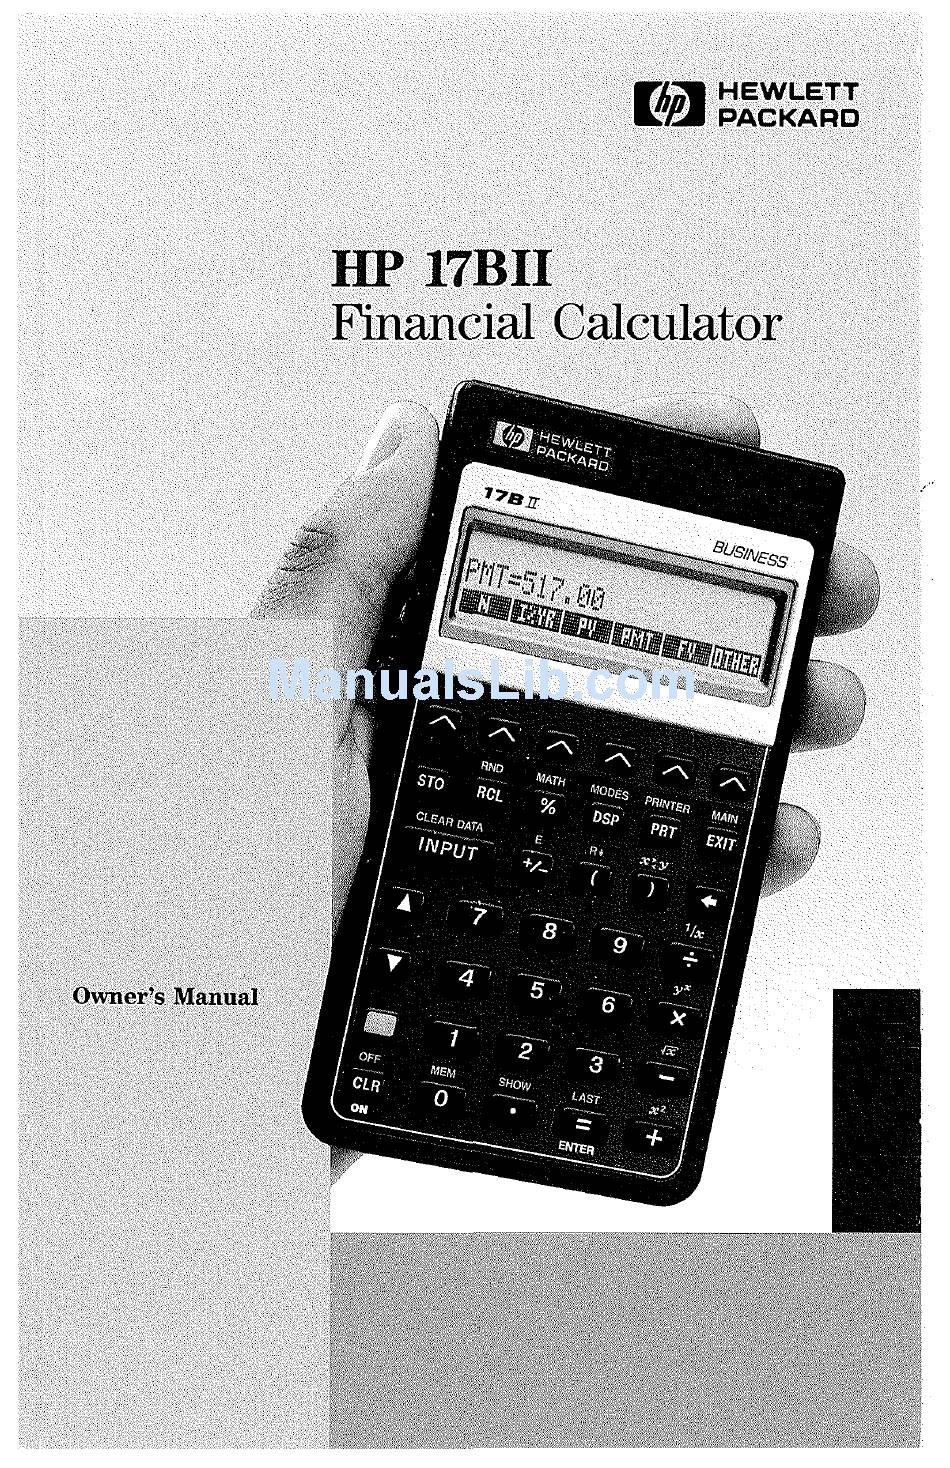 Hp 17bii Financial Calculator Owner S Manual Pdf Download Manualslib